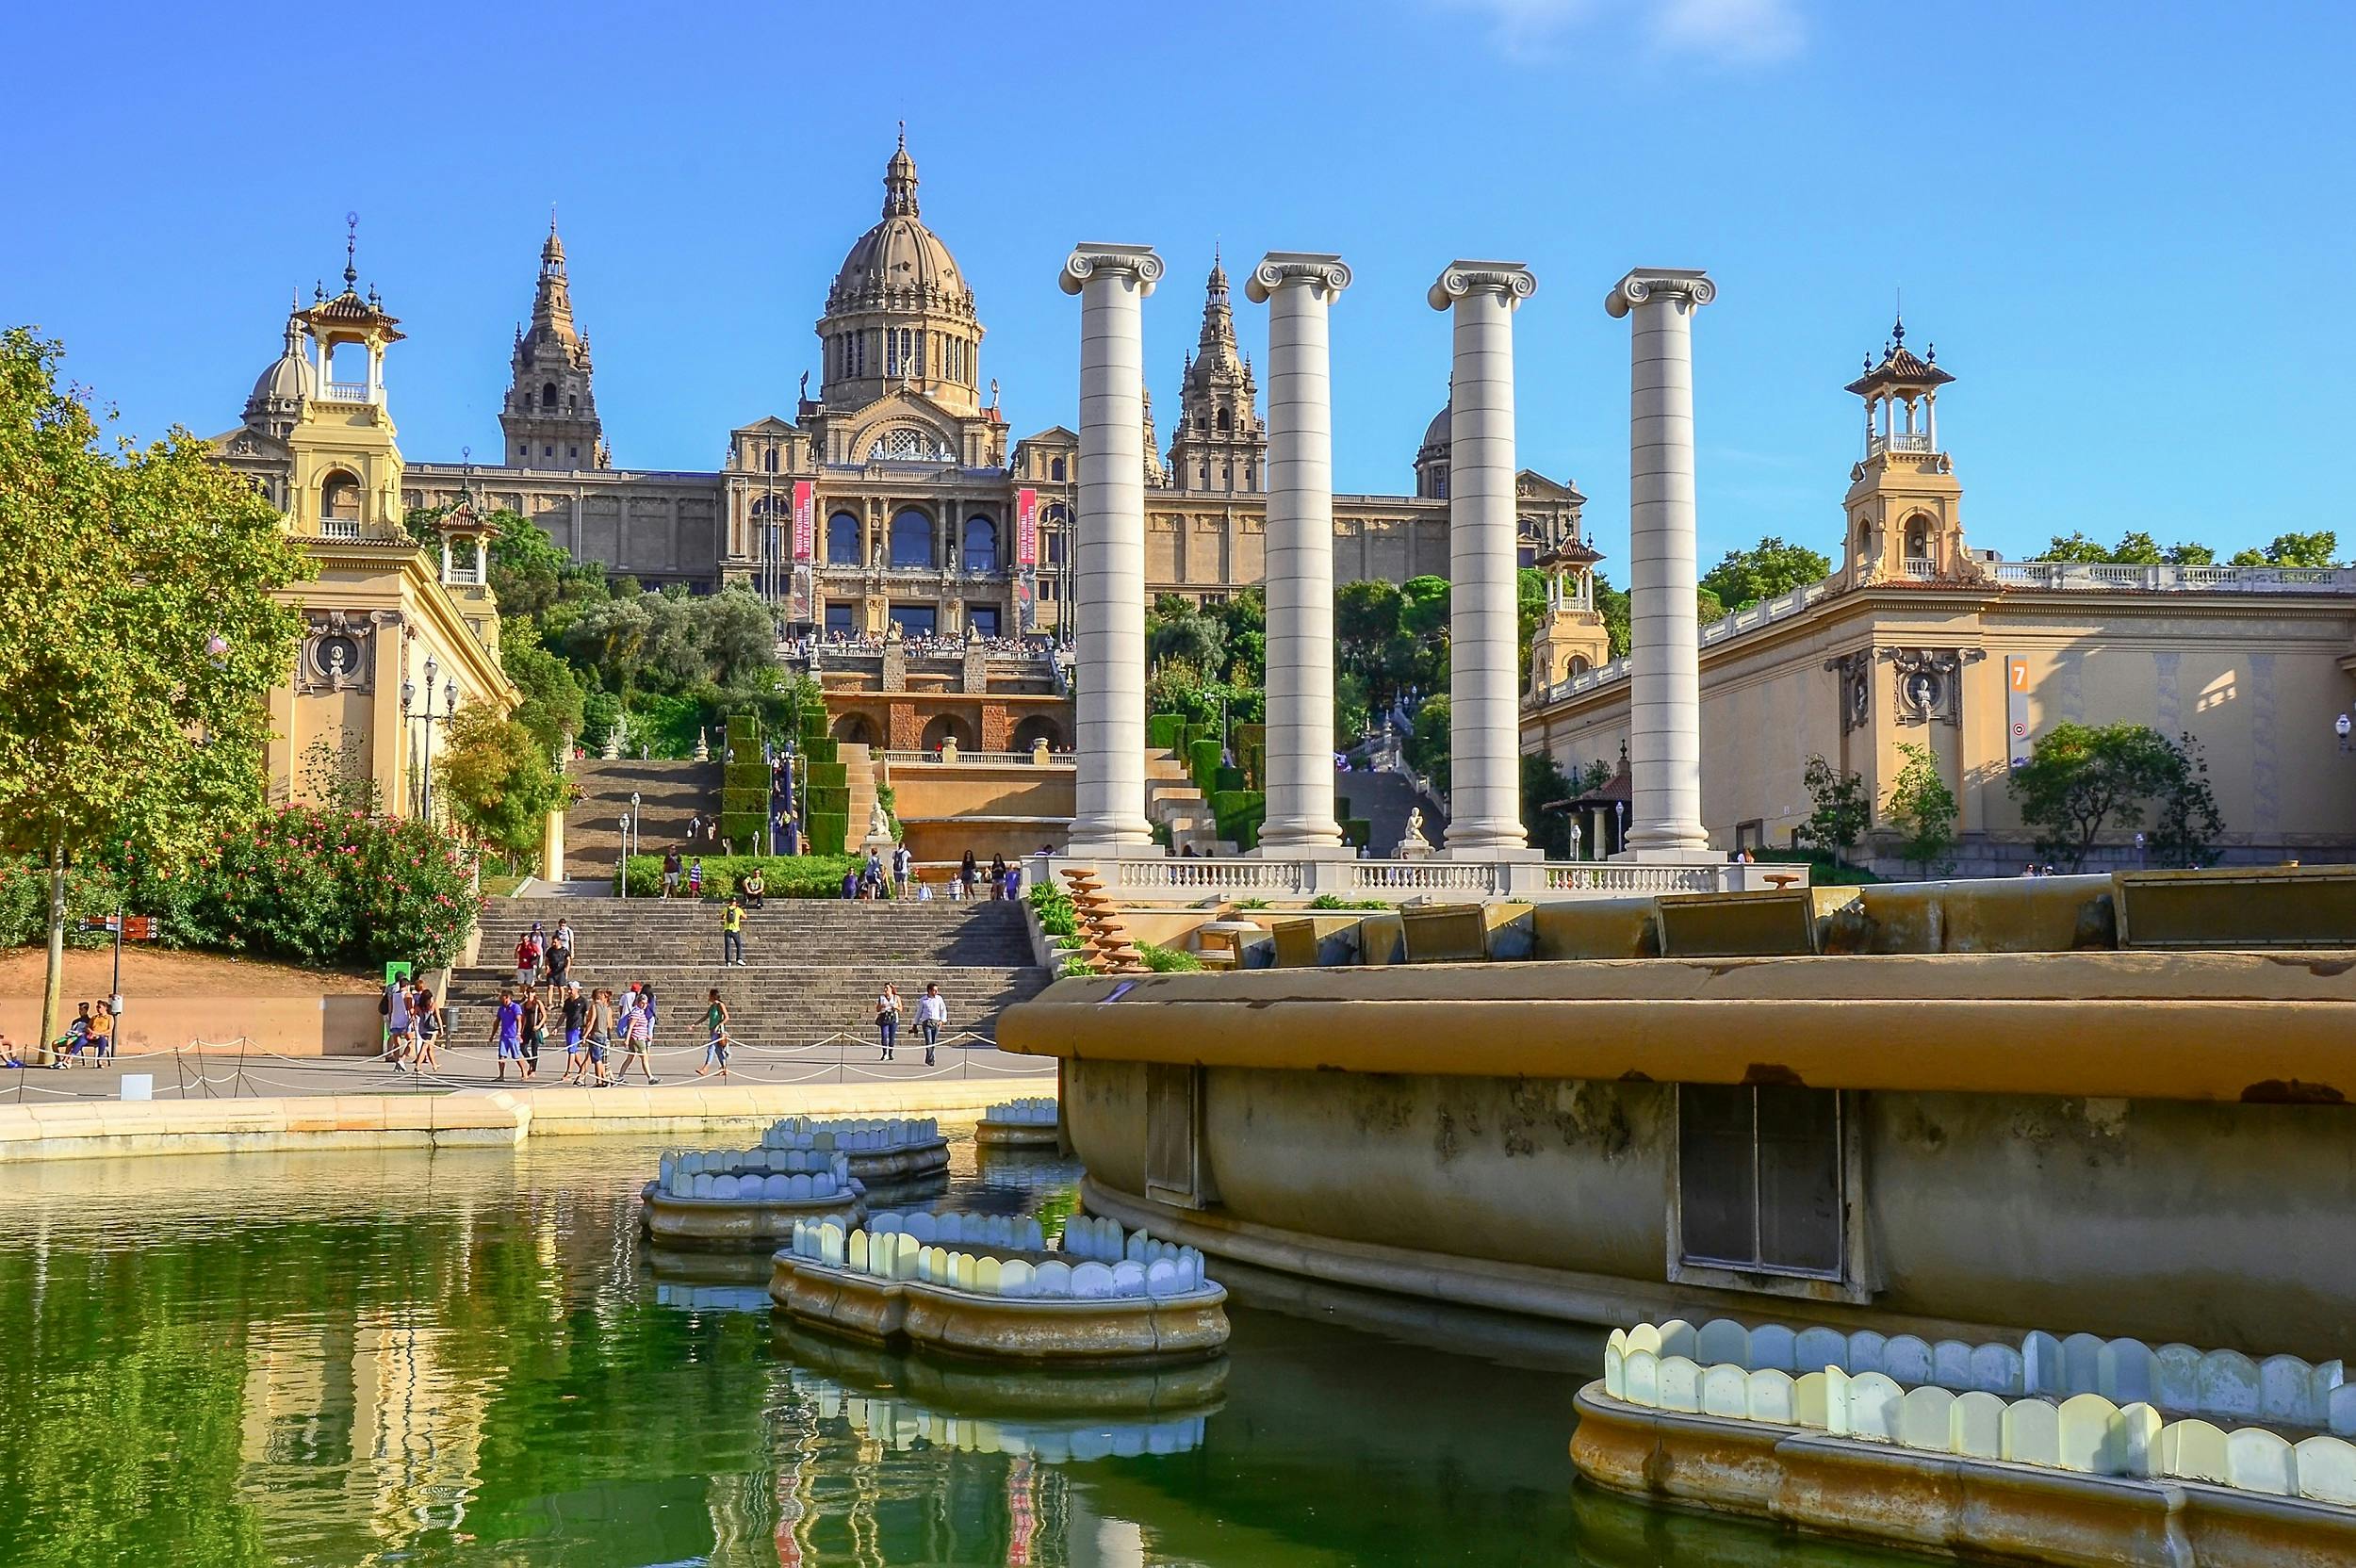 Teleférico de Barcelona, visita ao Castelo de Montjuic e show da Fonte Mágica